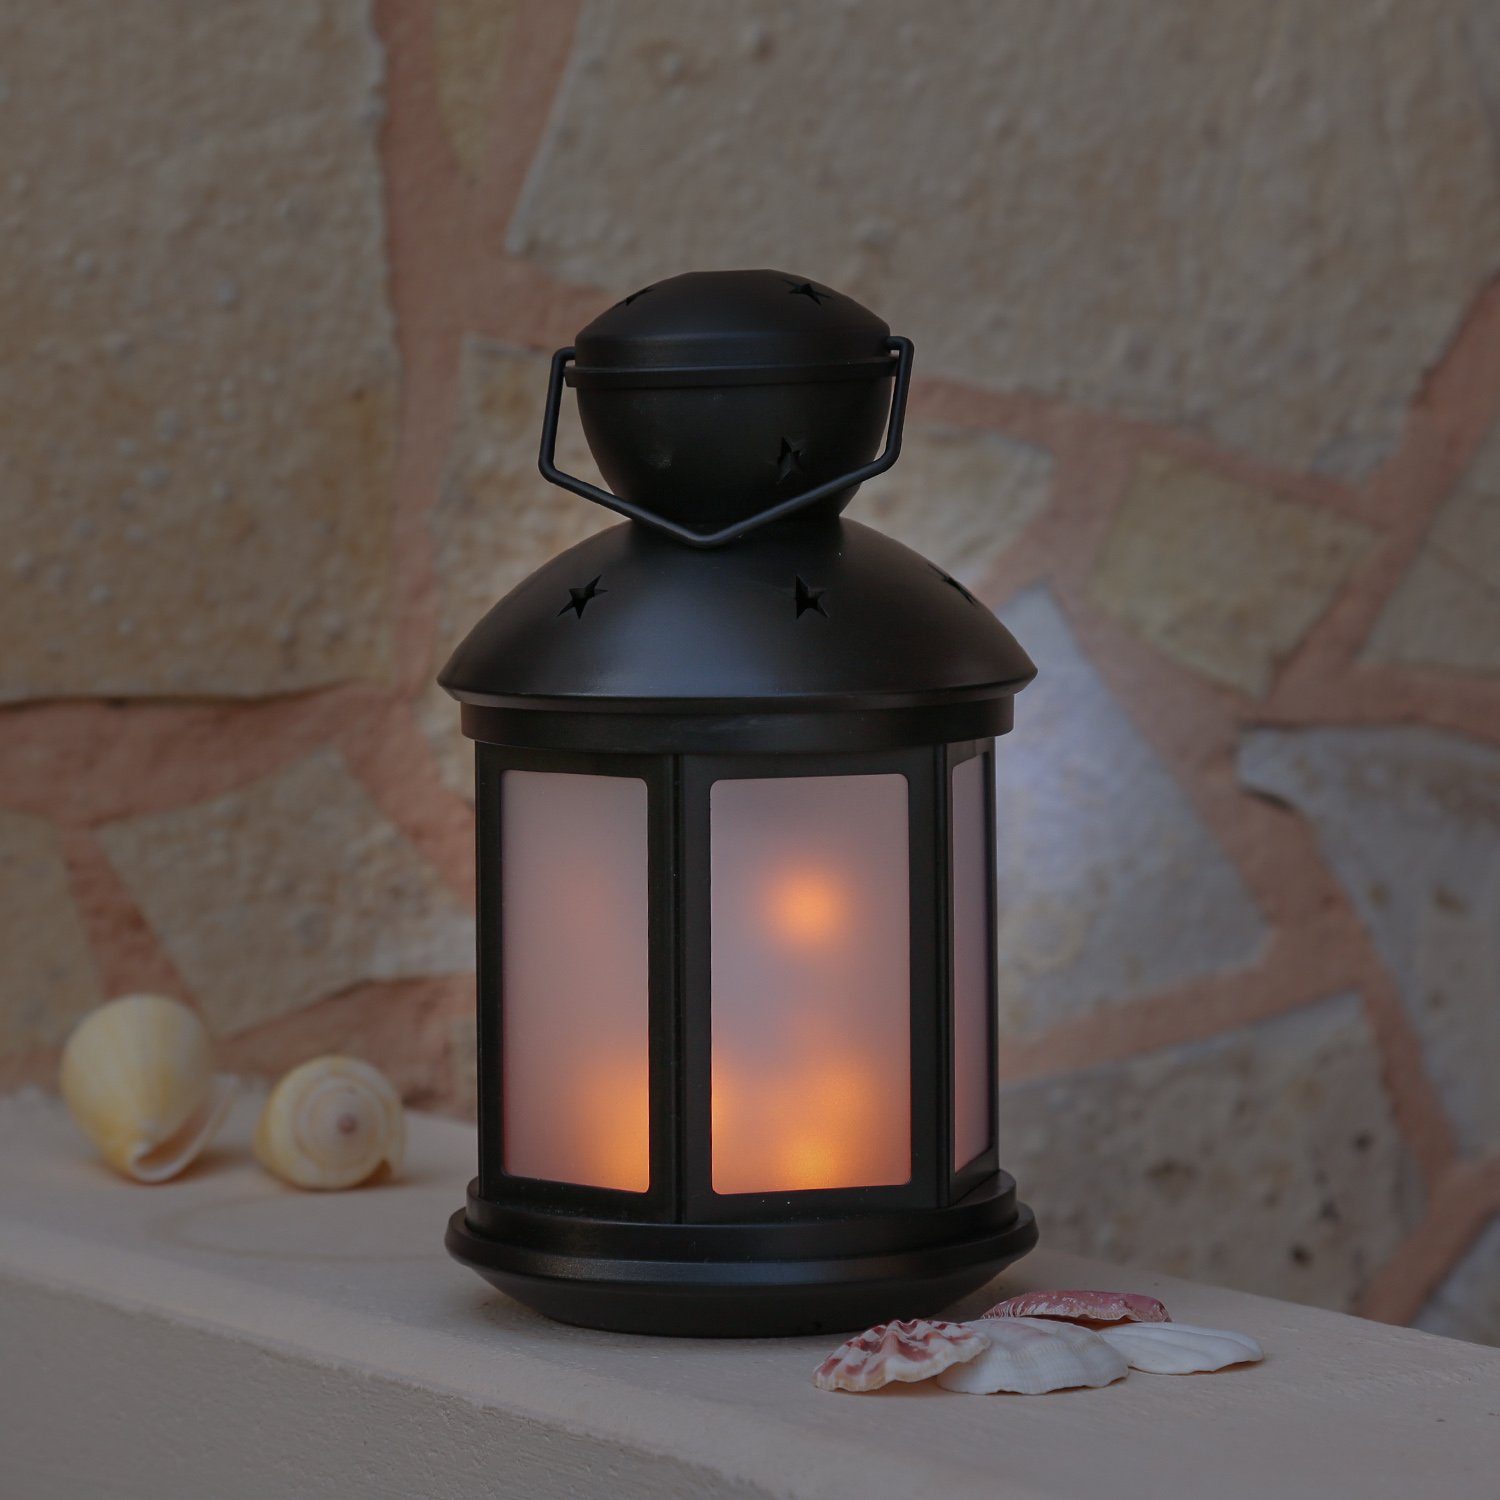 MARELIDA LED LED Dekolaterne Flammeneffekt amber Classic, schwarz, LED mit Laterne Laterne 22cm flackernd